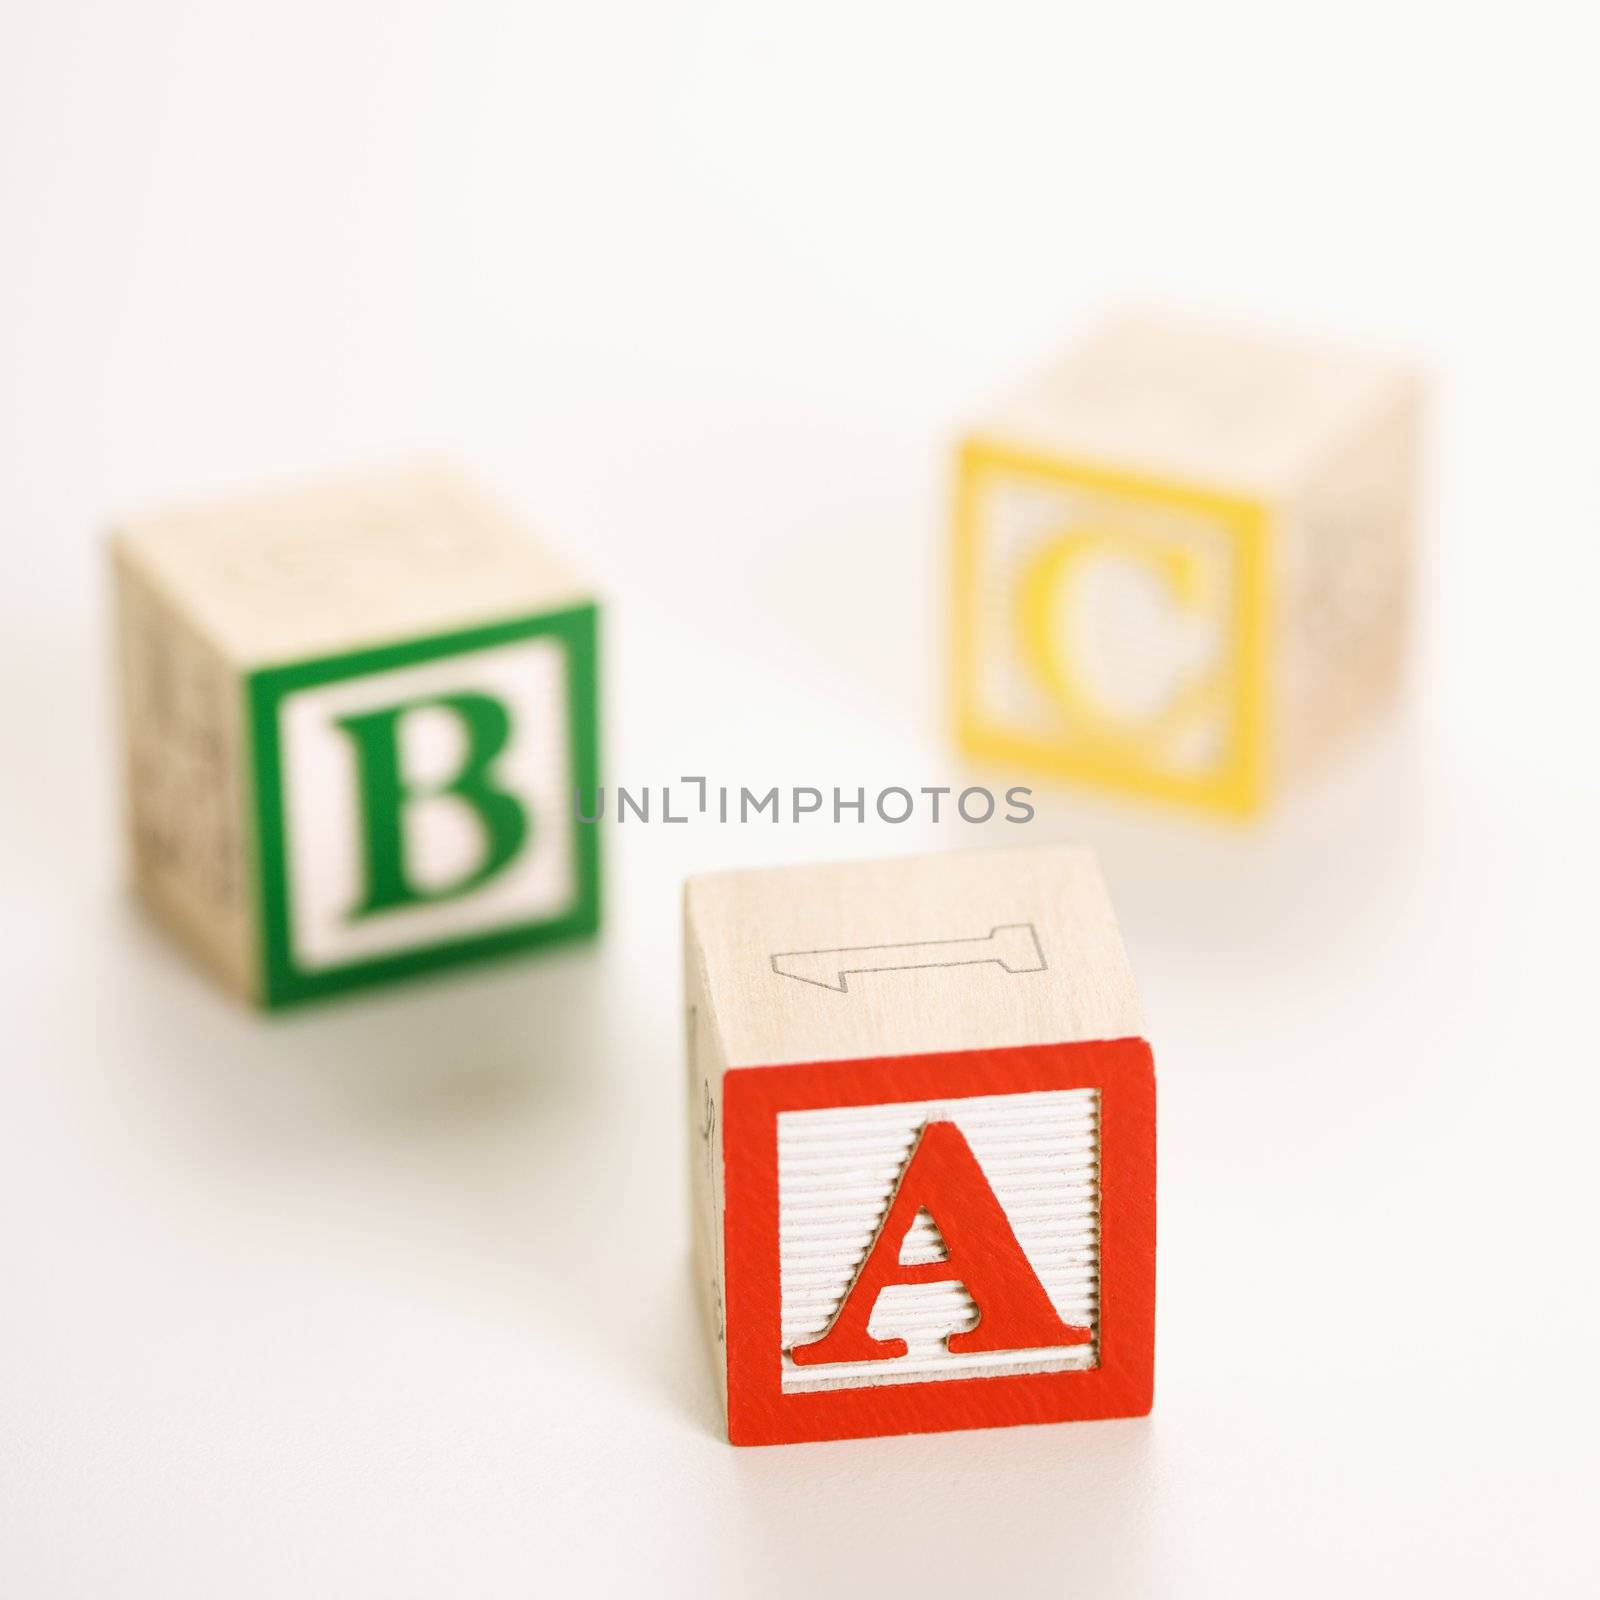 Toy ABC blocks. by iofoto